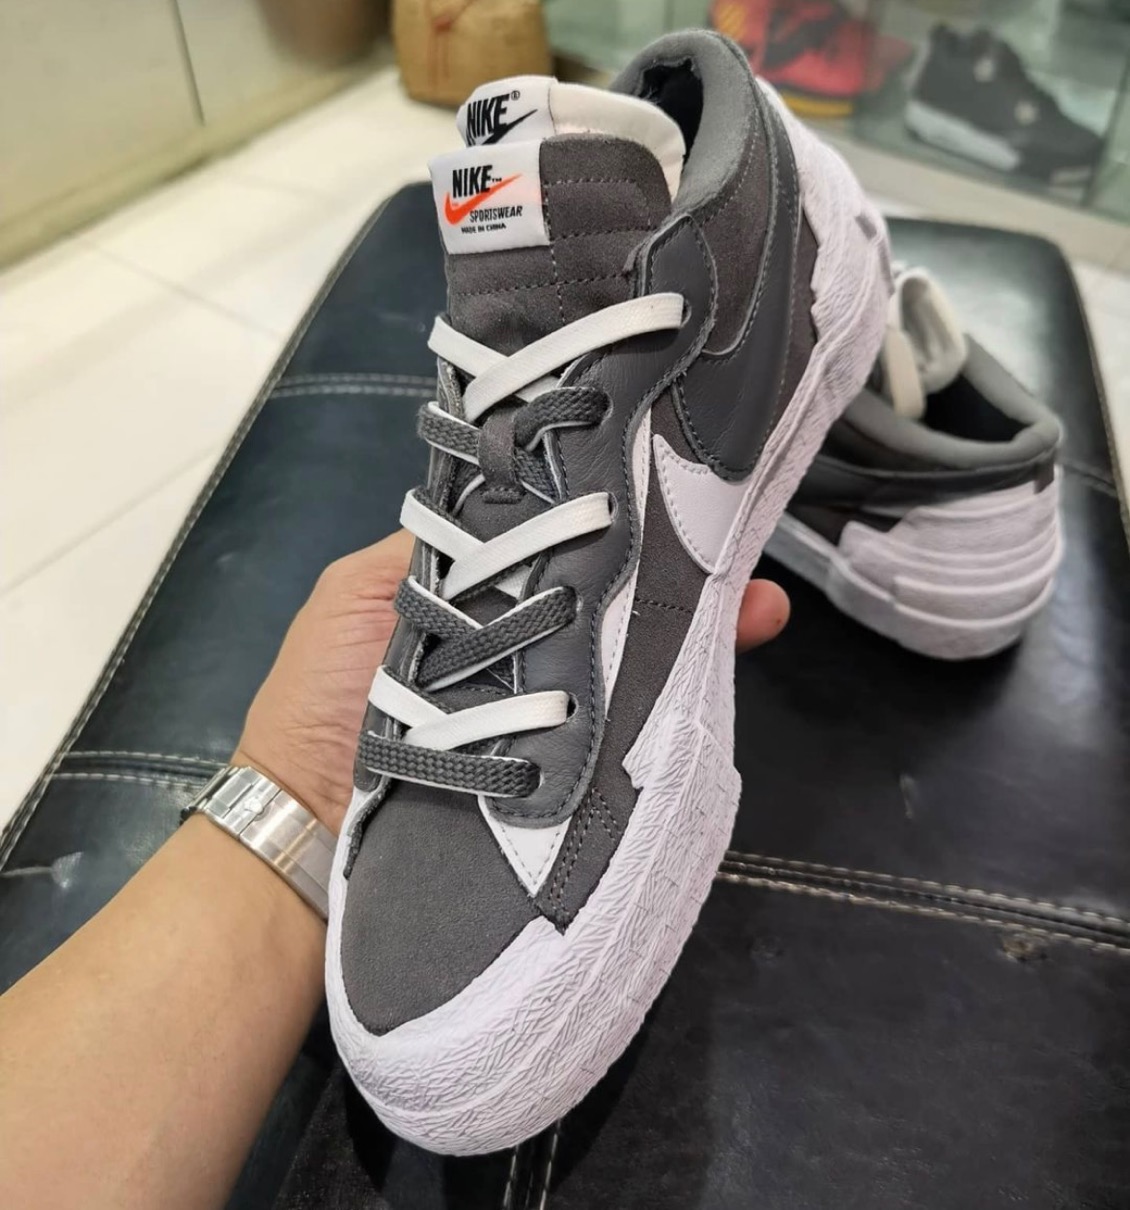 Sacai × Nike】Blazer Low “Iron Grey” & “Light British Tan”が国内7 